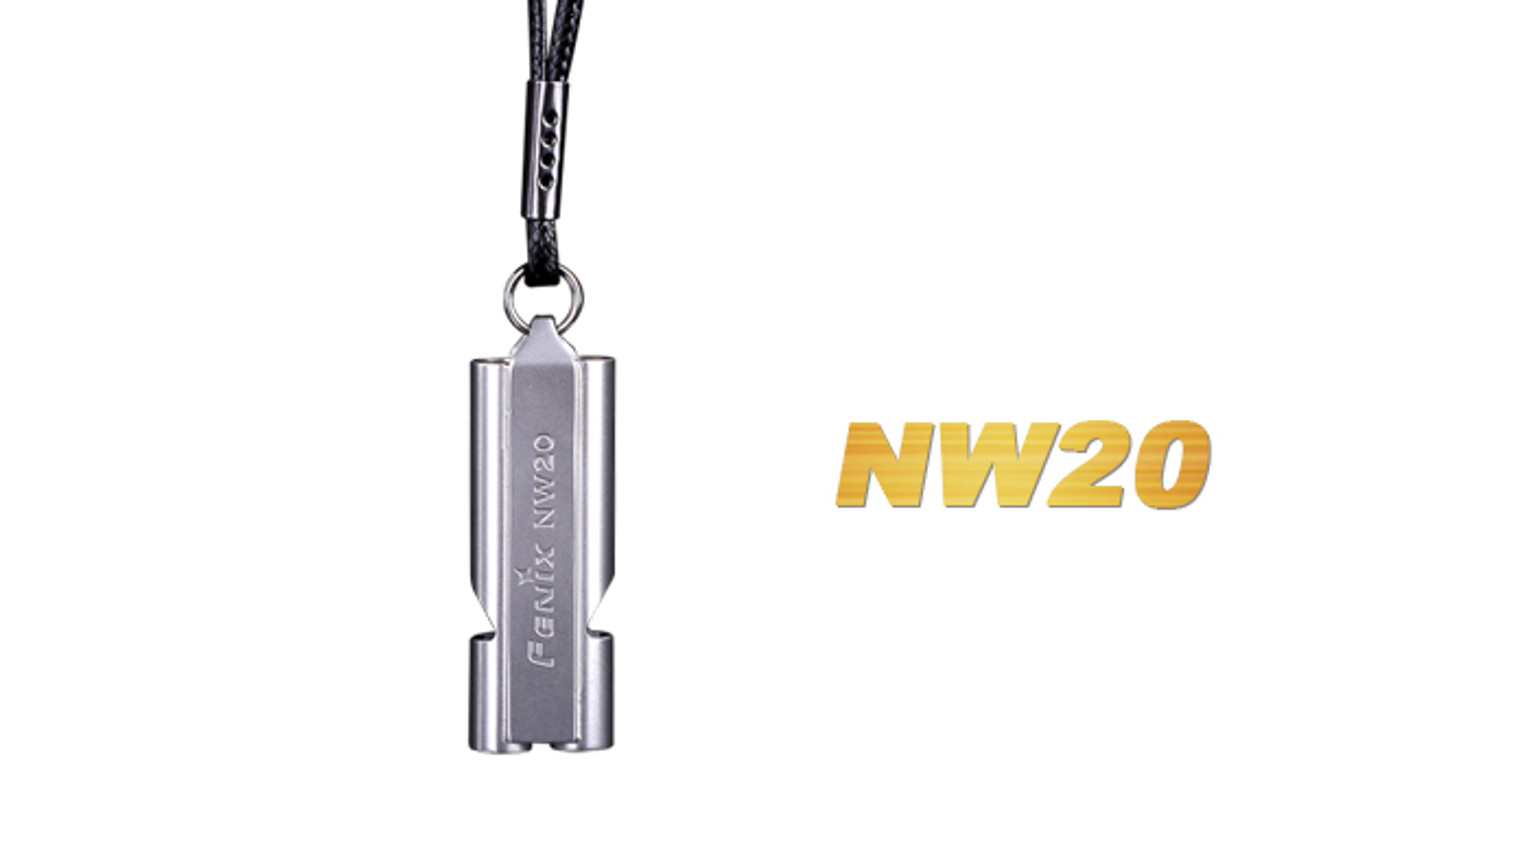 Fenix NW20 Safety Whistle - 120 Dcb.